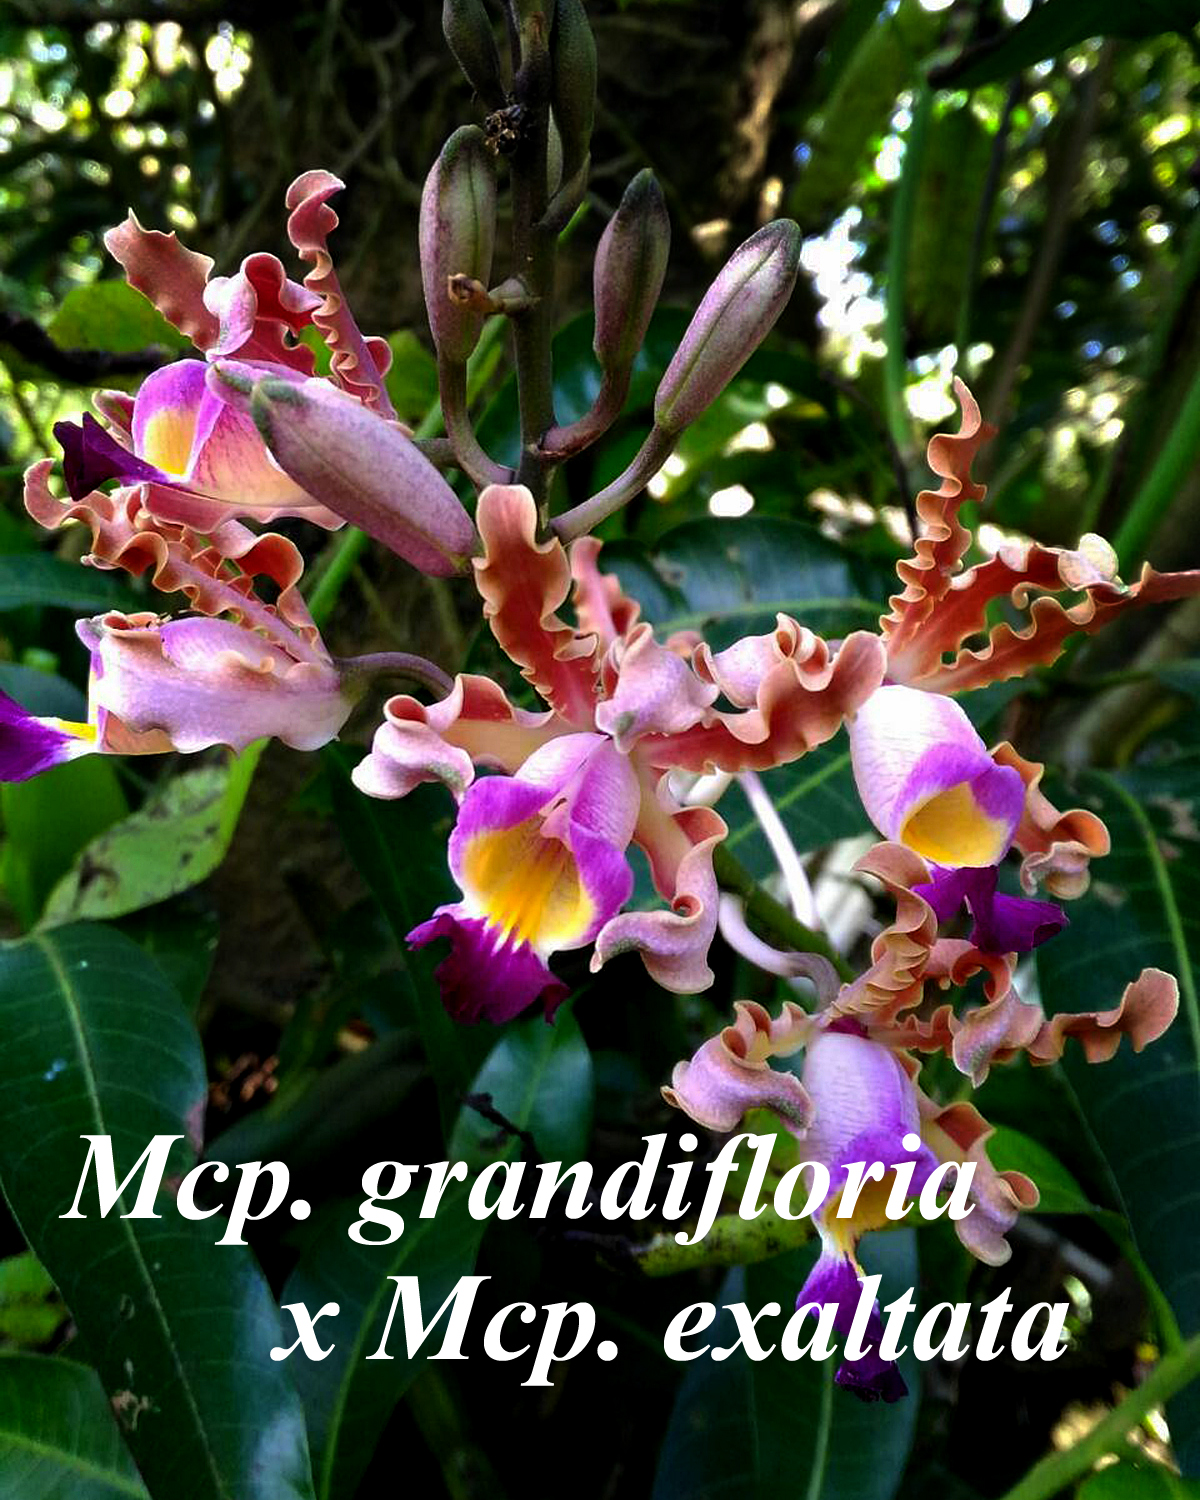 Mcp. grandifloria x exaltata divisions